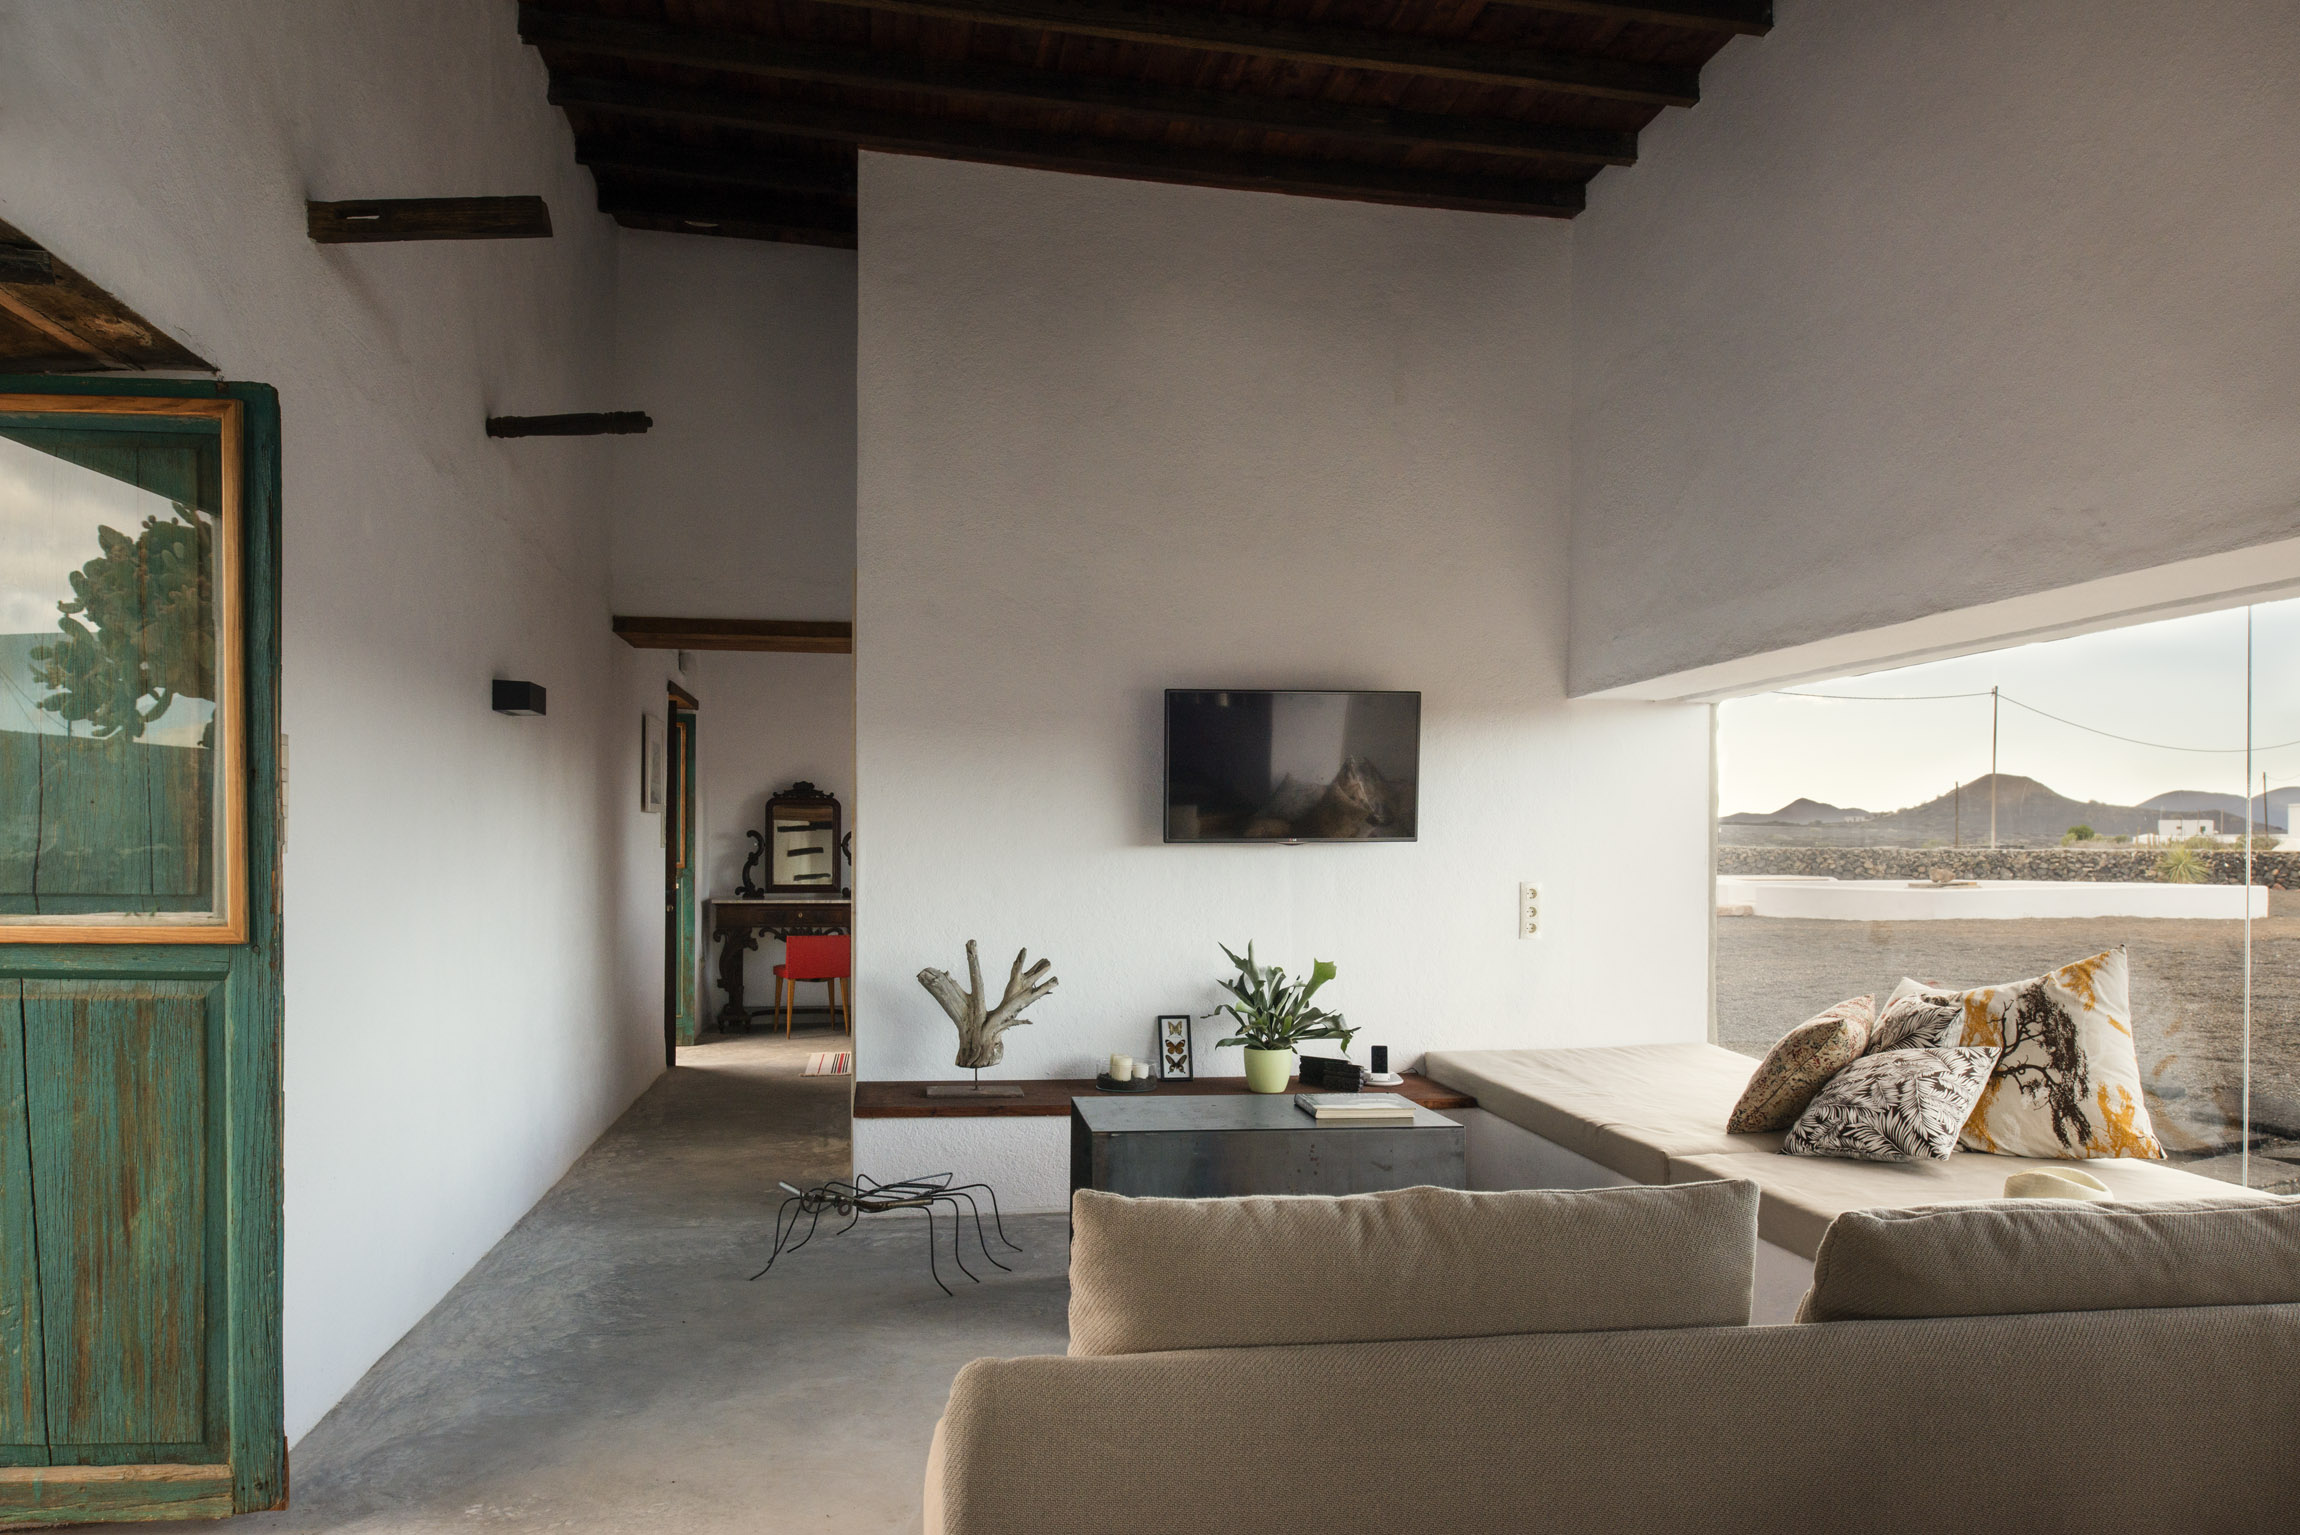 Buenavista Lanzarote Country Suites Casa Este livingroom details